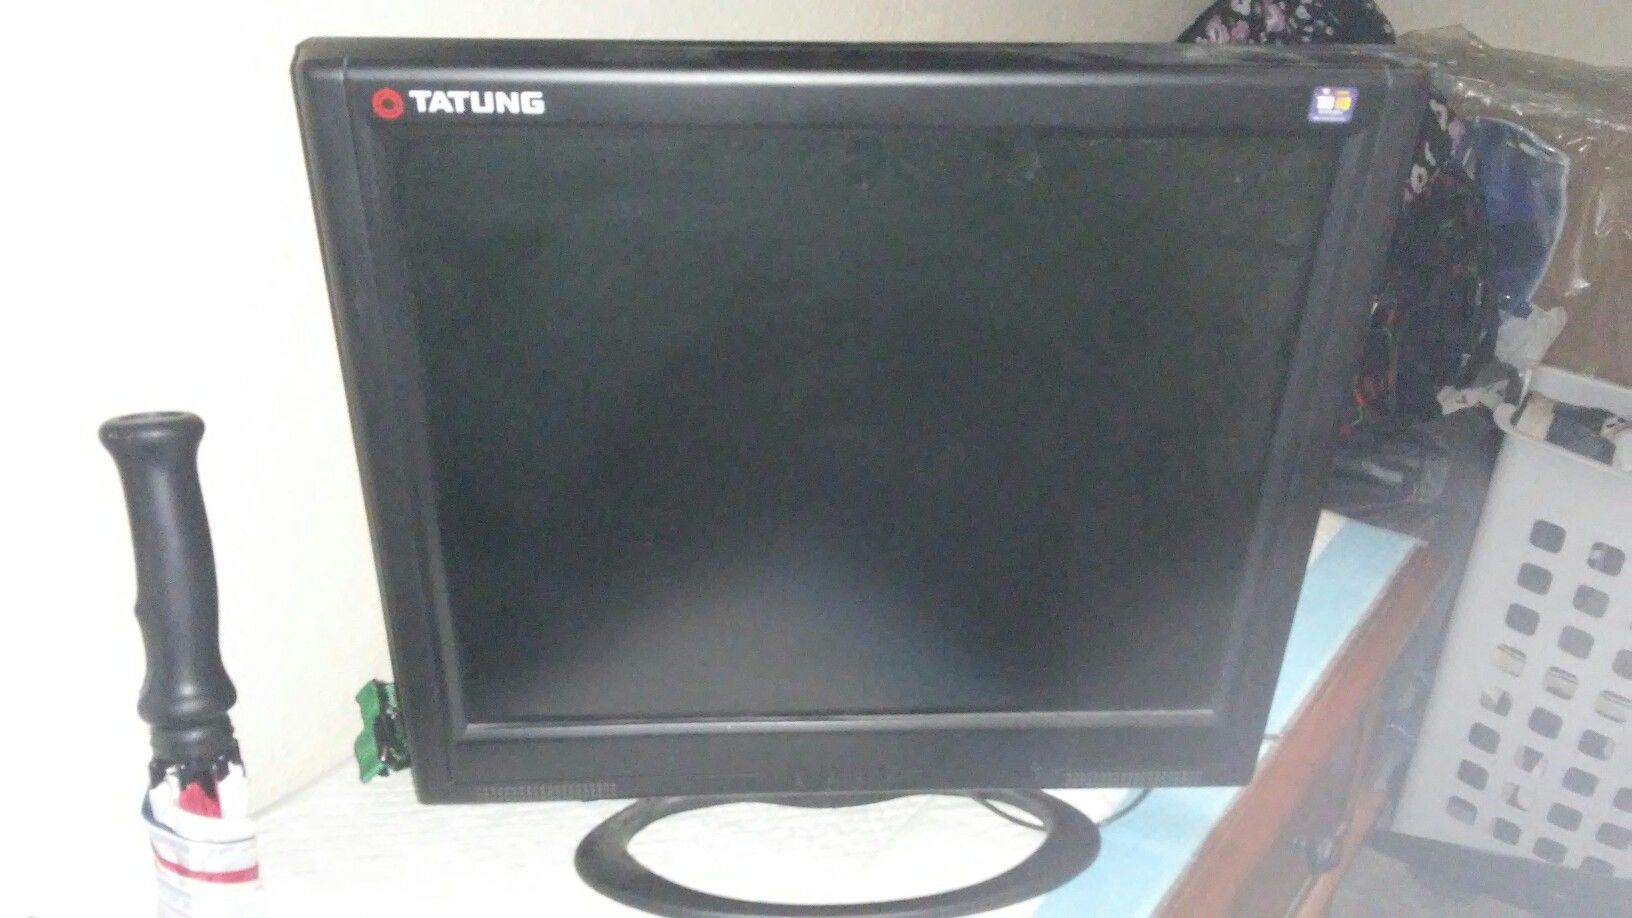 Computer or camera monitor